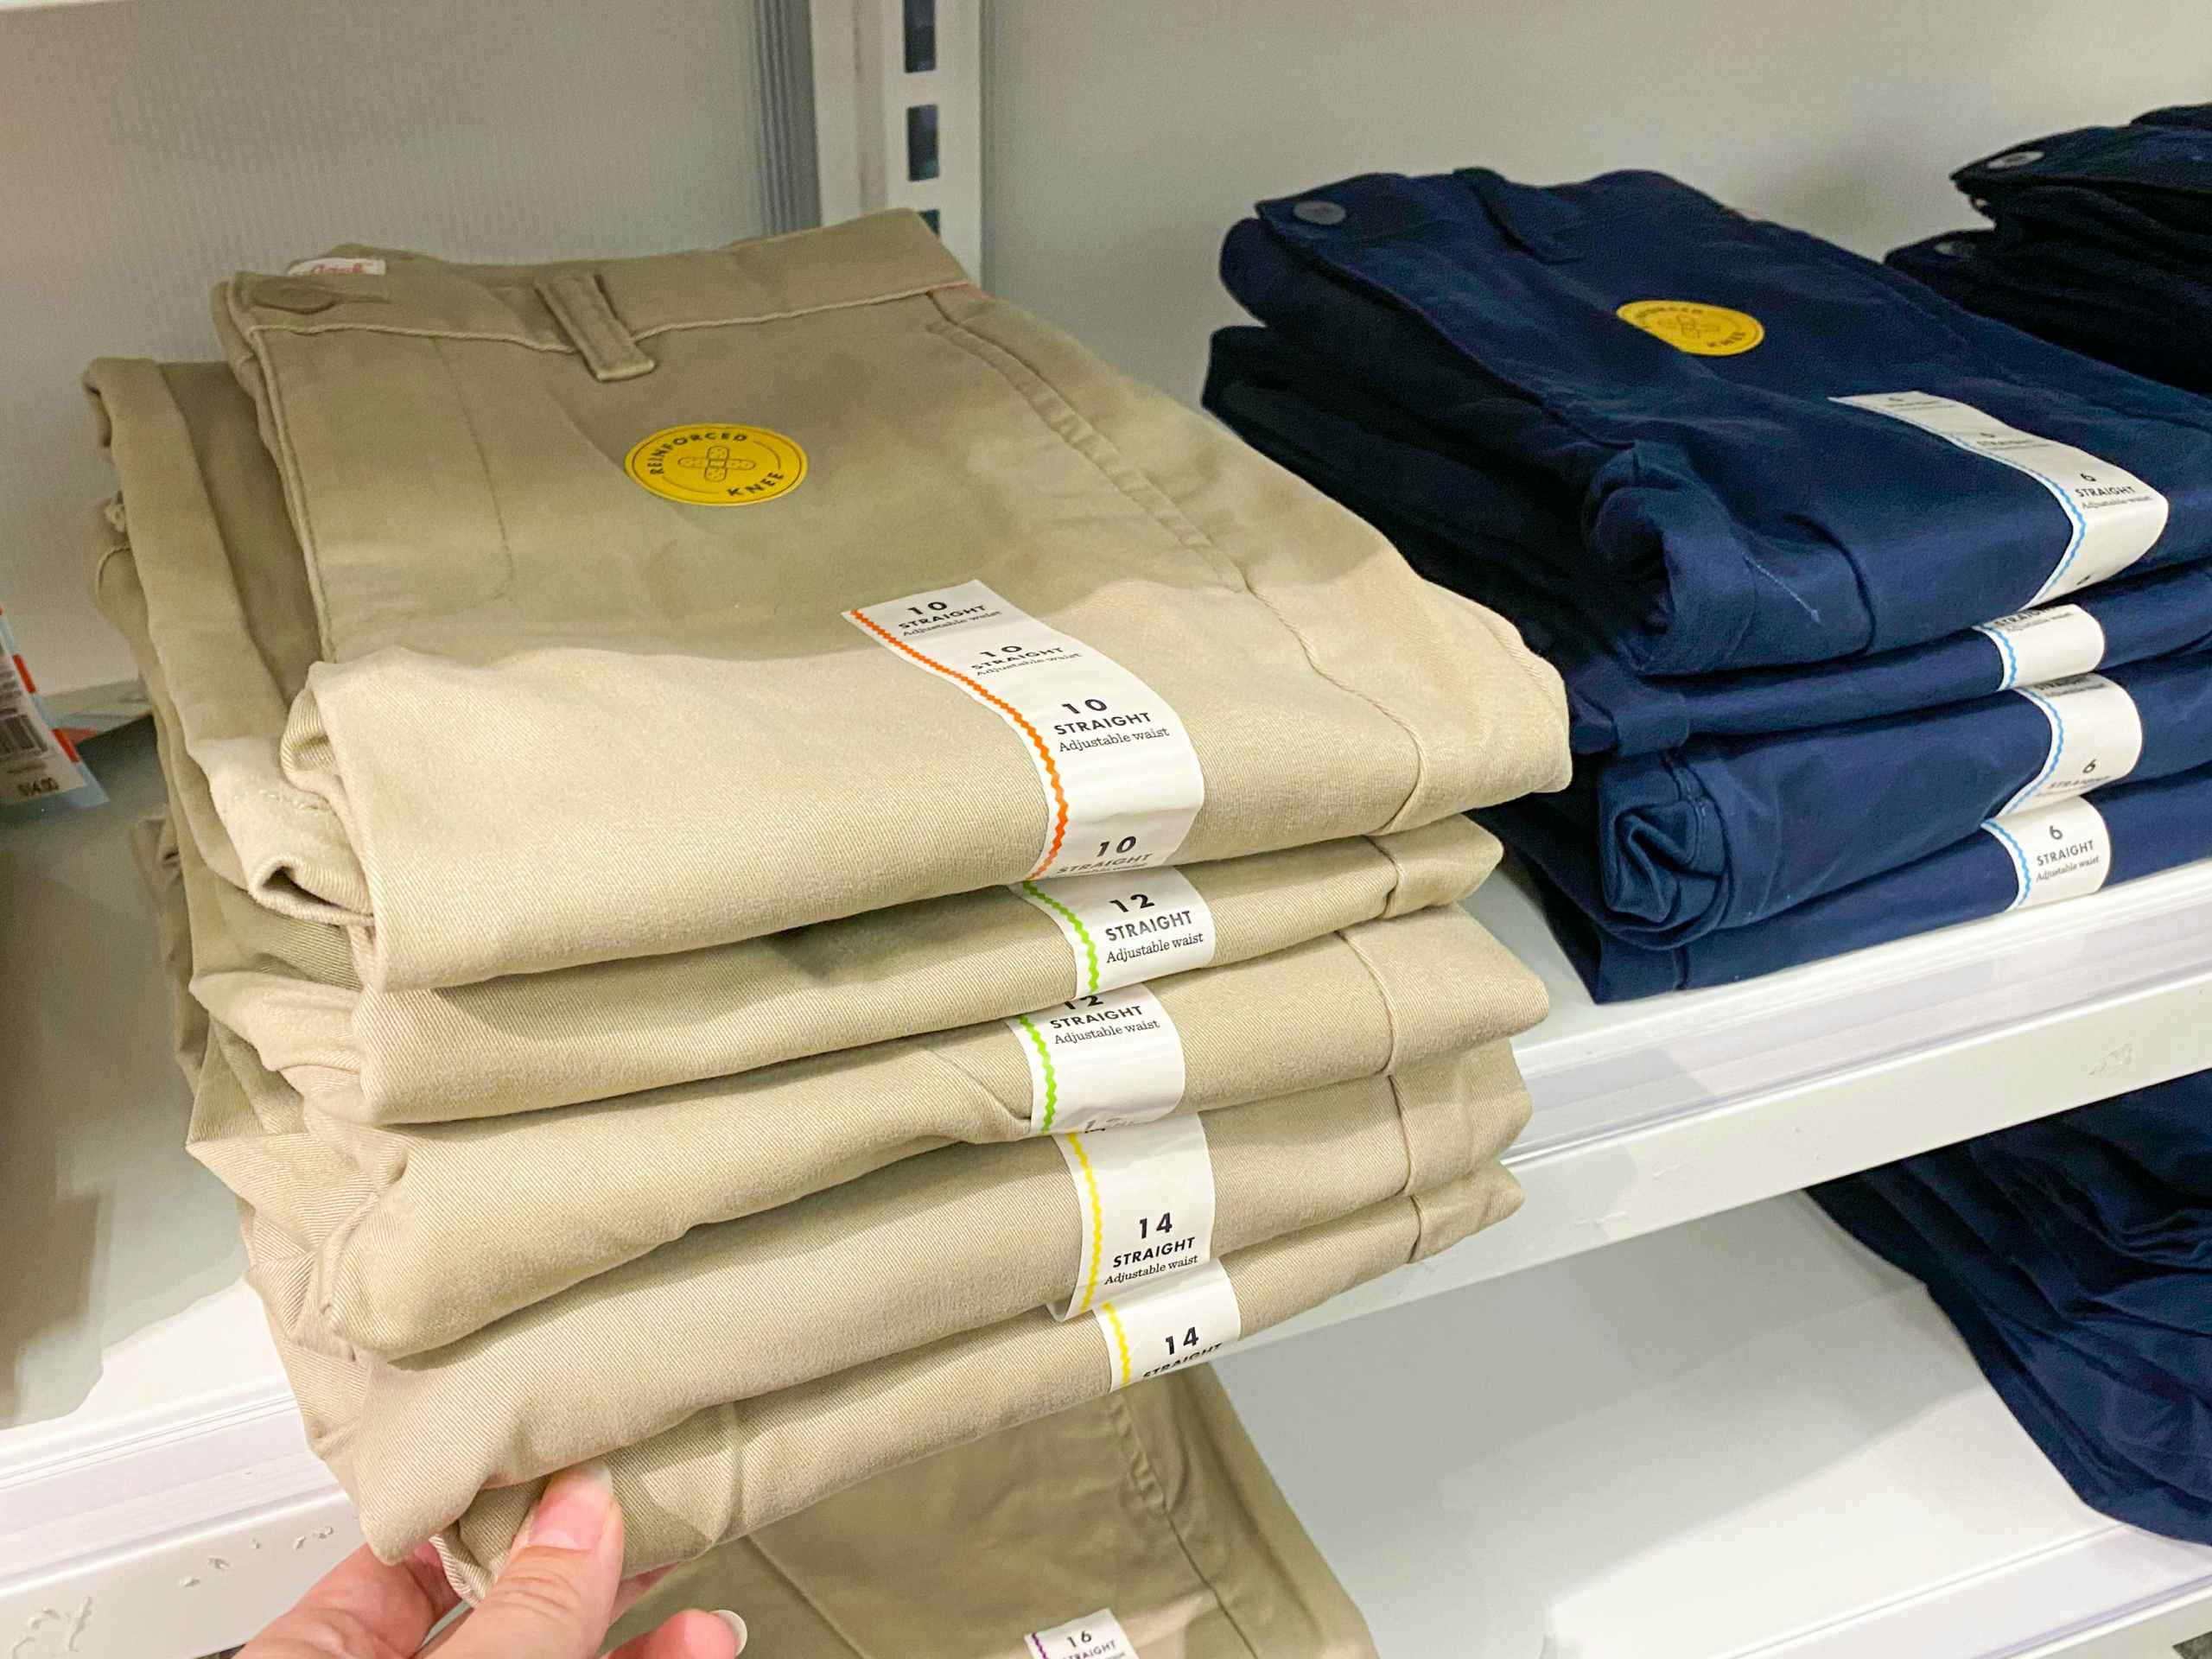 Stacks of Cat & Jack school uniform slacks on a shelf at Target.